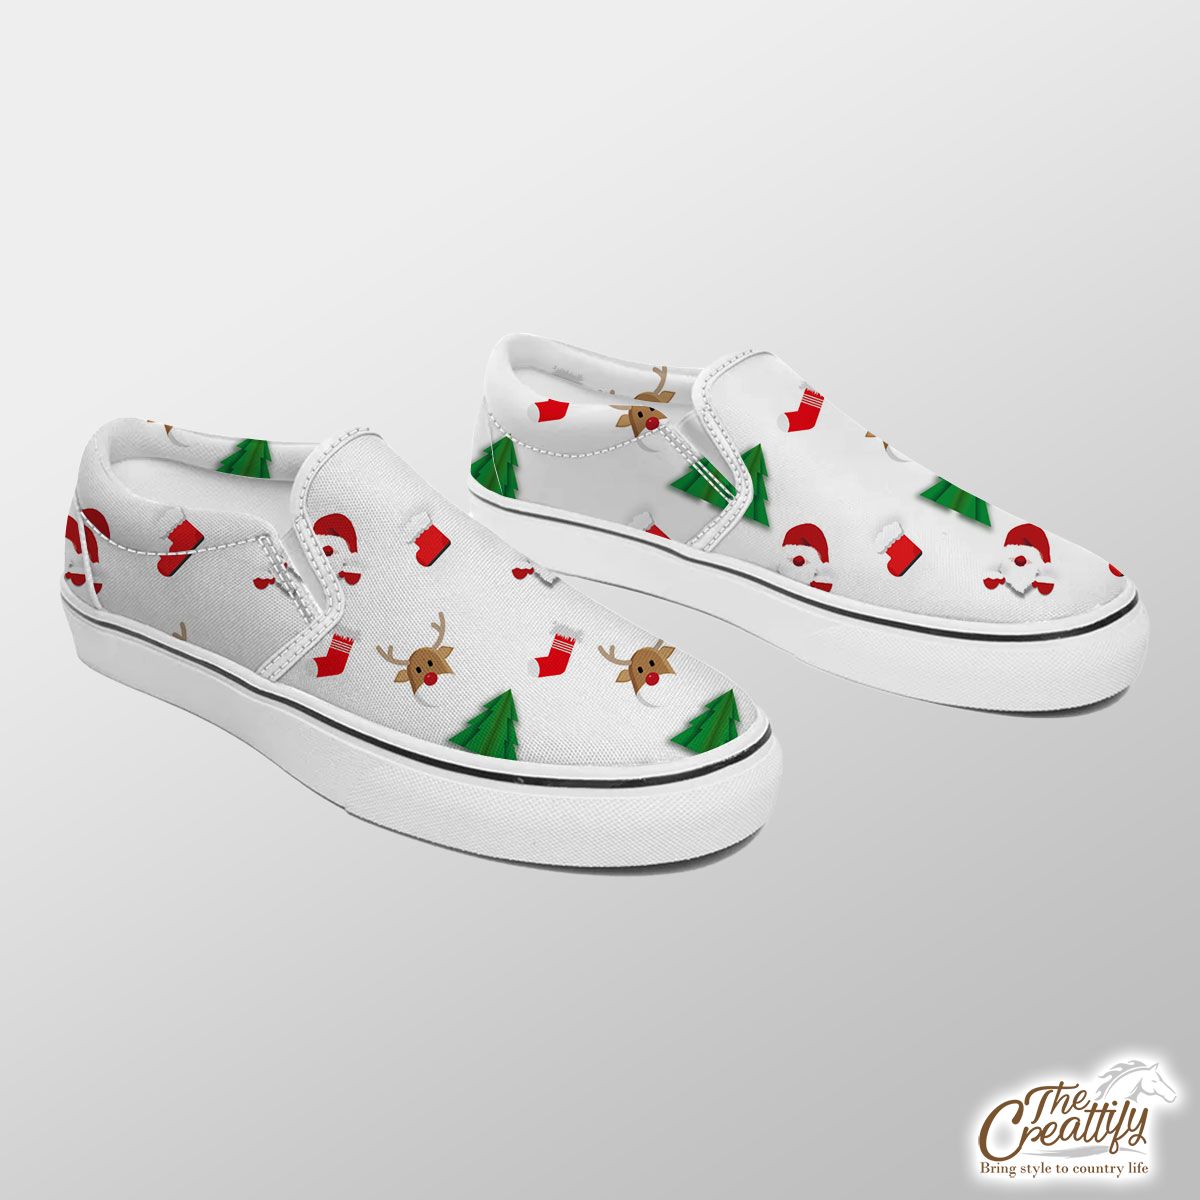 Santa Claus, Pine Tree Silhouette, Christmas Reindeer And Red Socks Seamless Pattern Slip On Sneakers